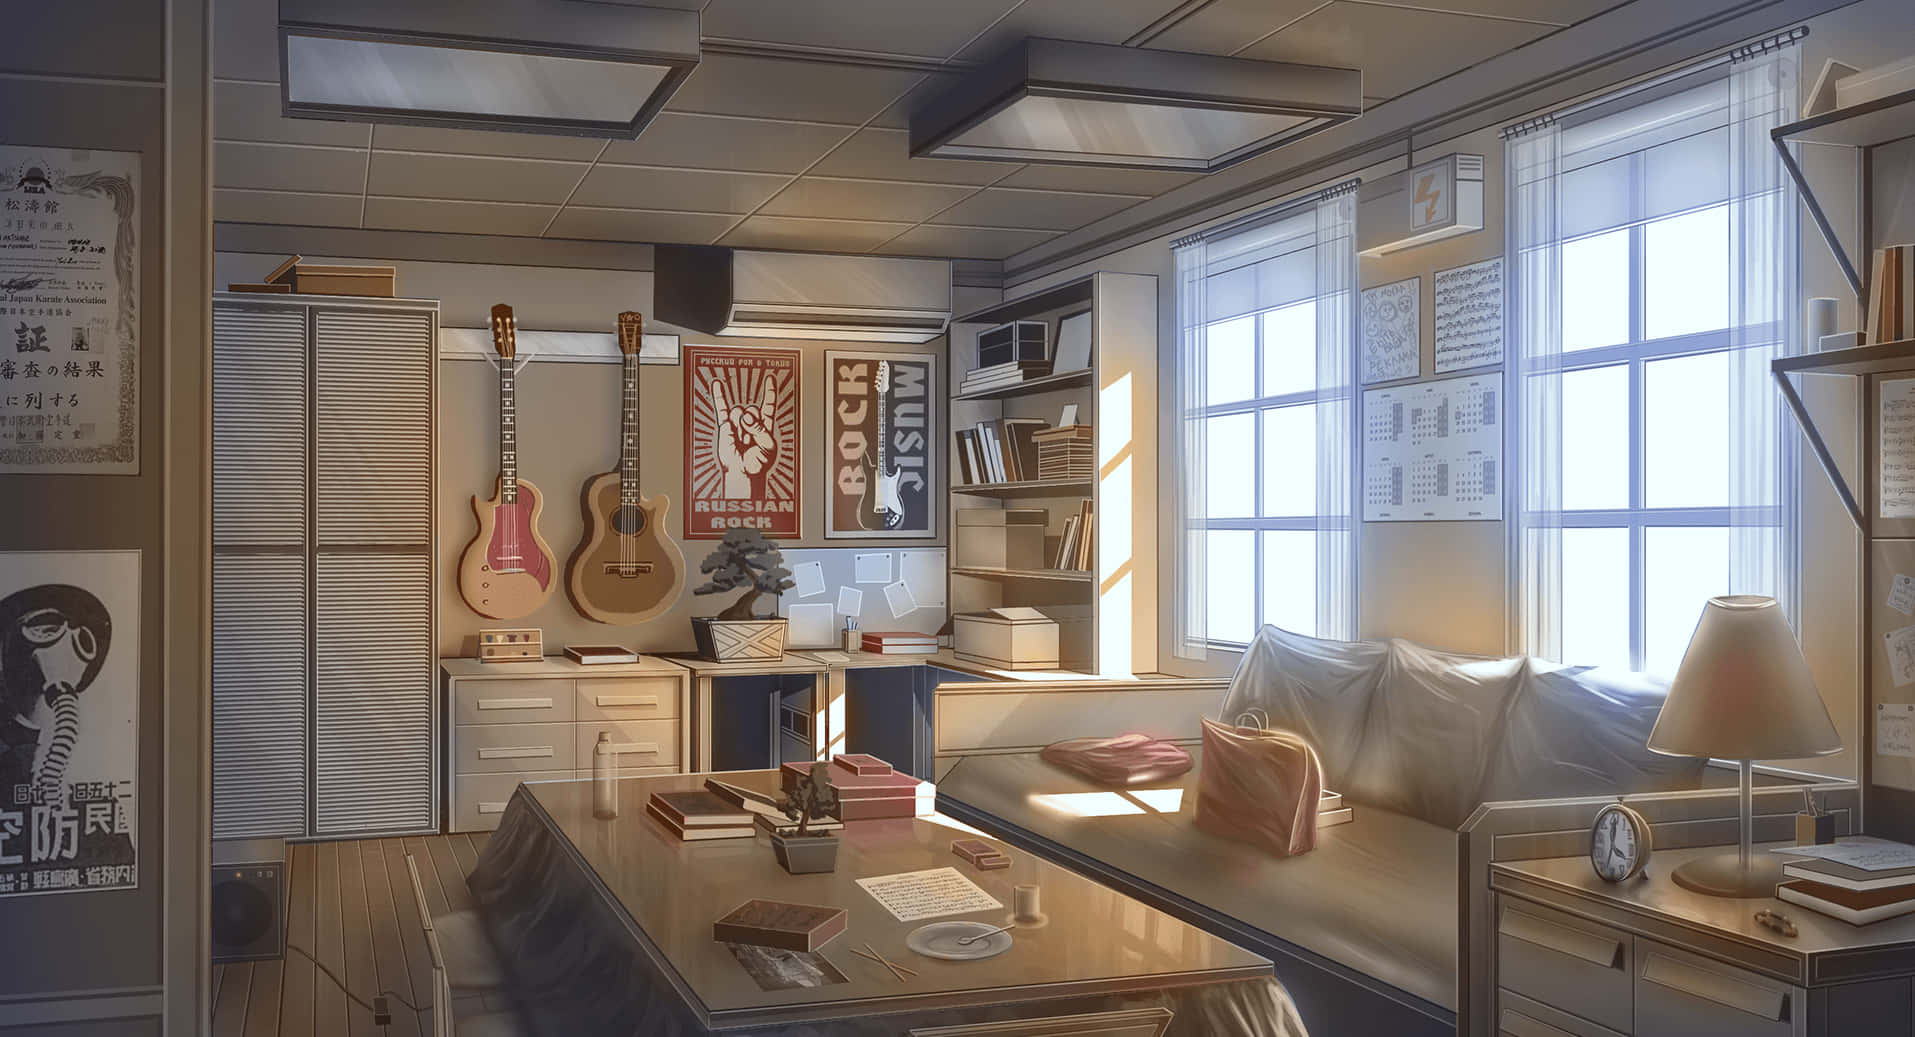 ArtStation  Anime living room